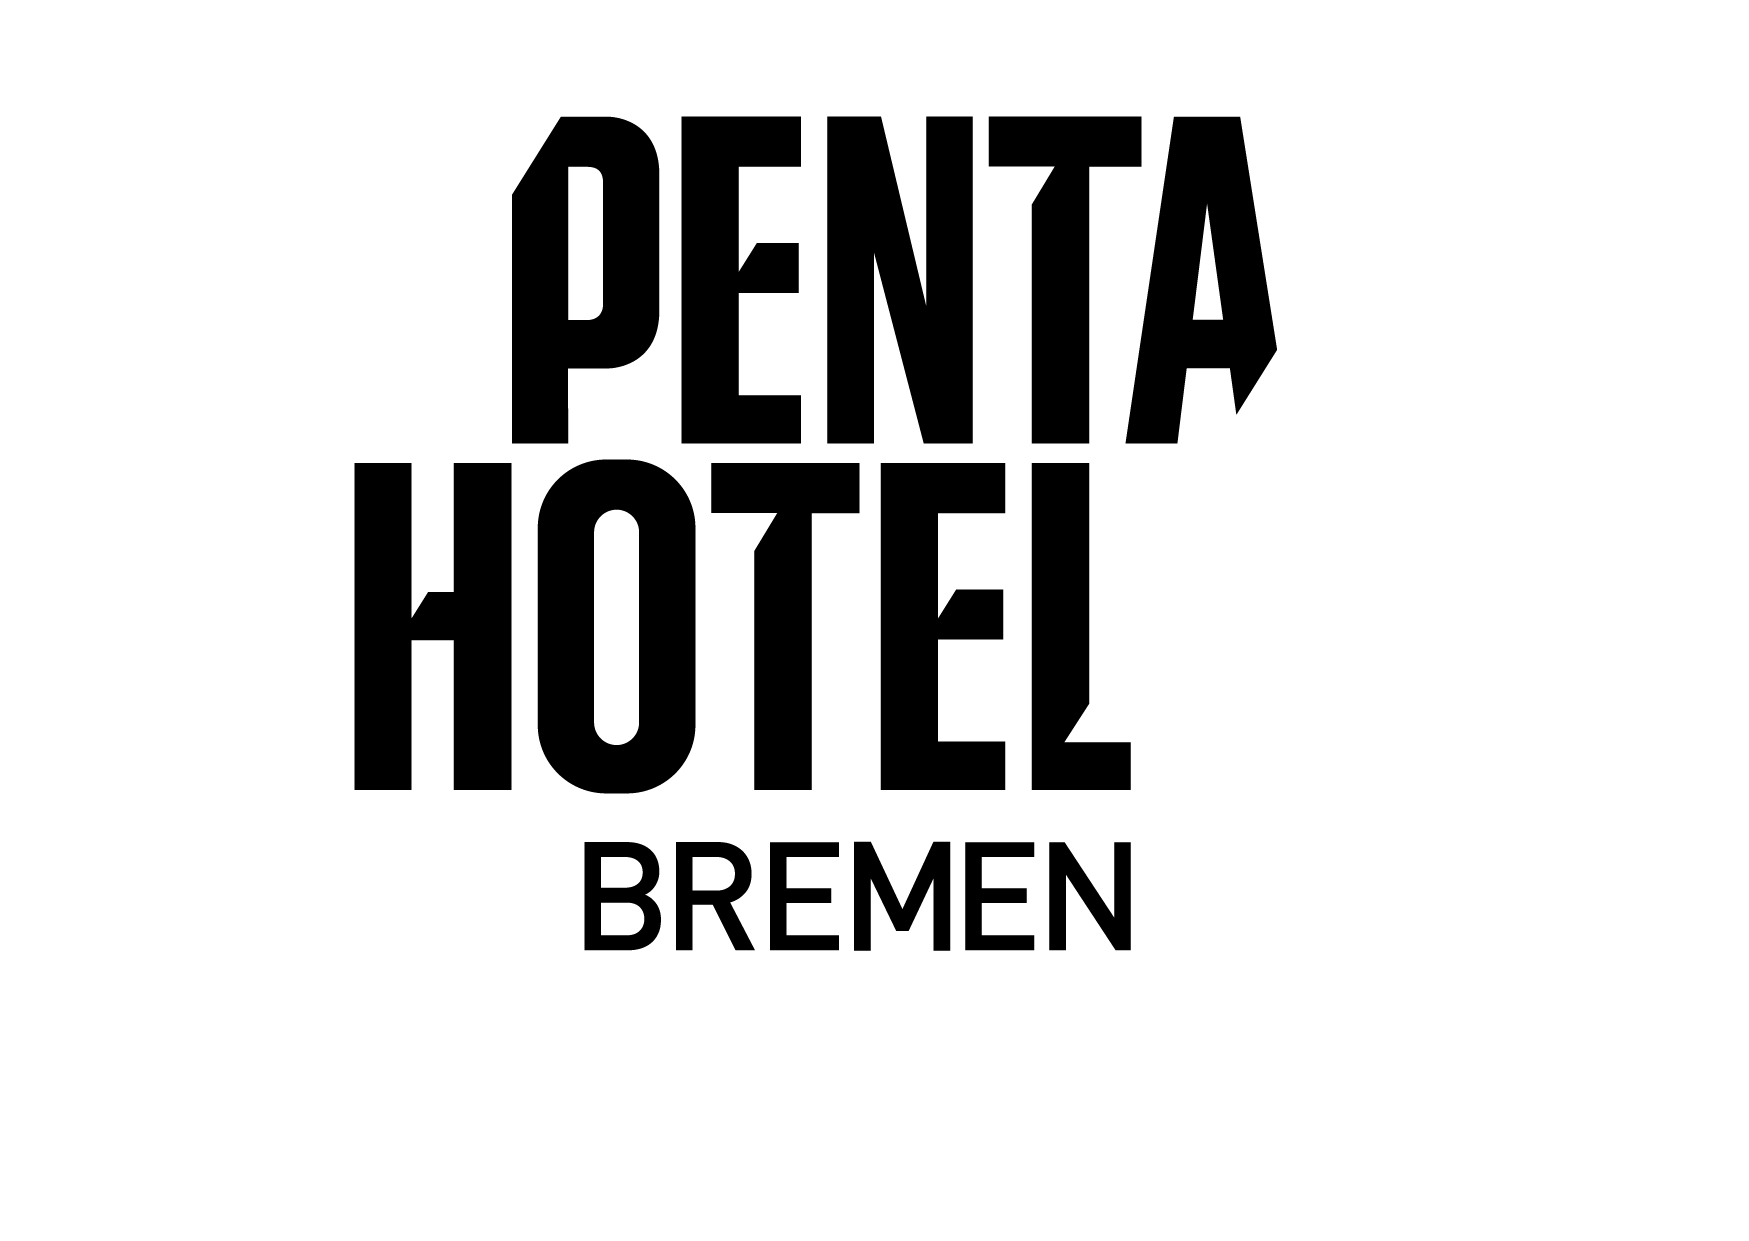 Penta Logo Bremen